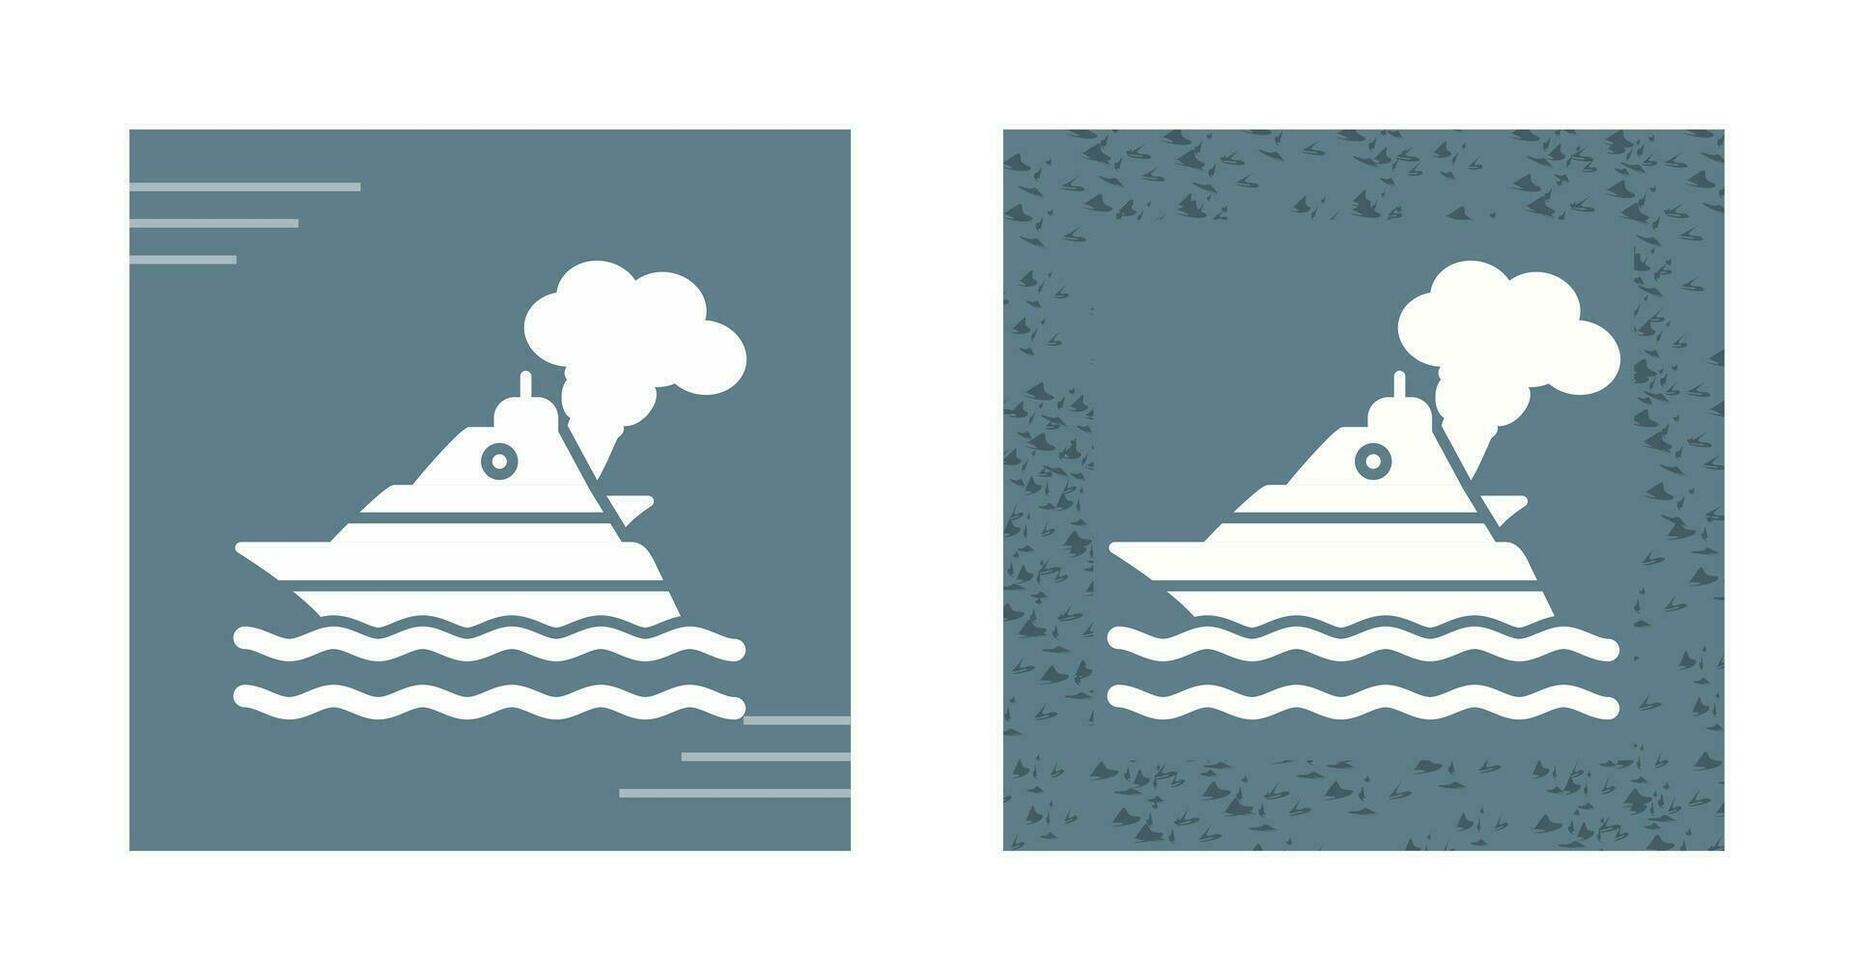 icono de vector de contaminación de barco